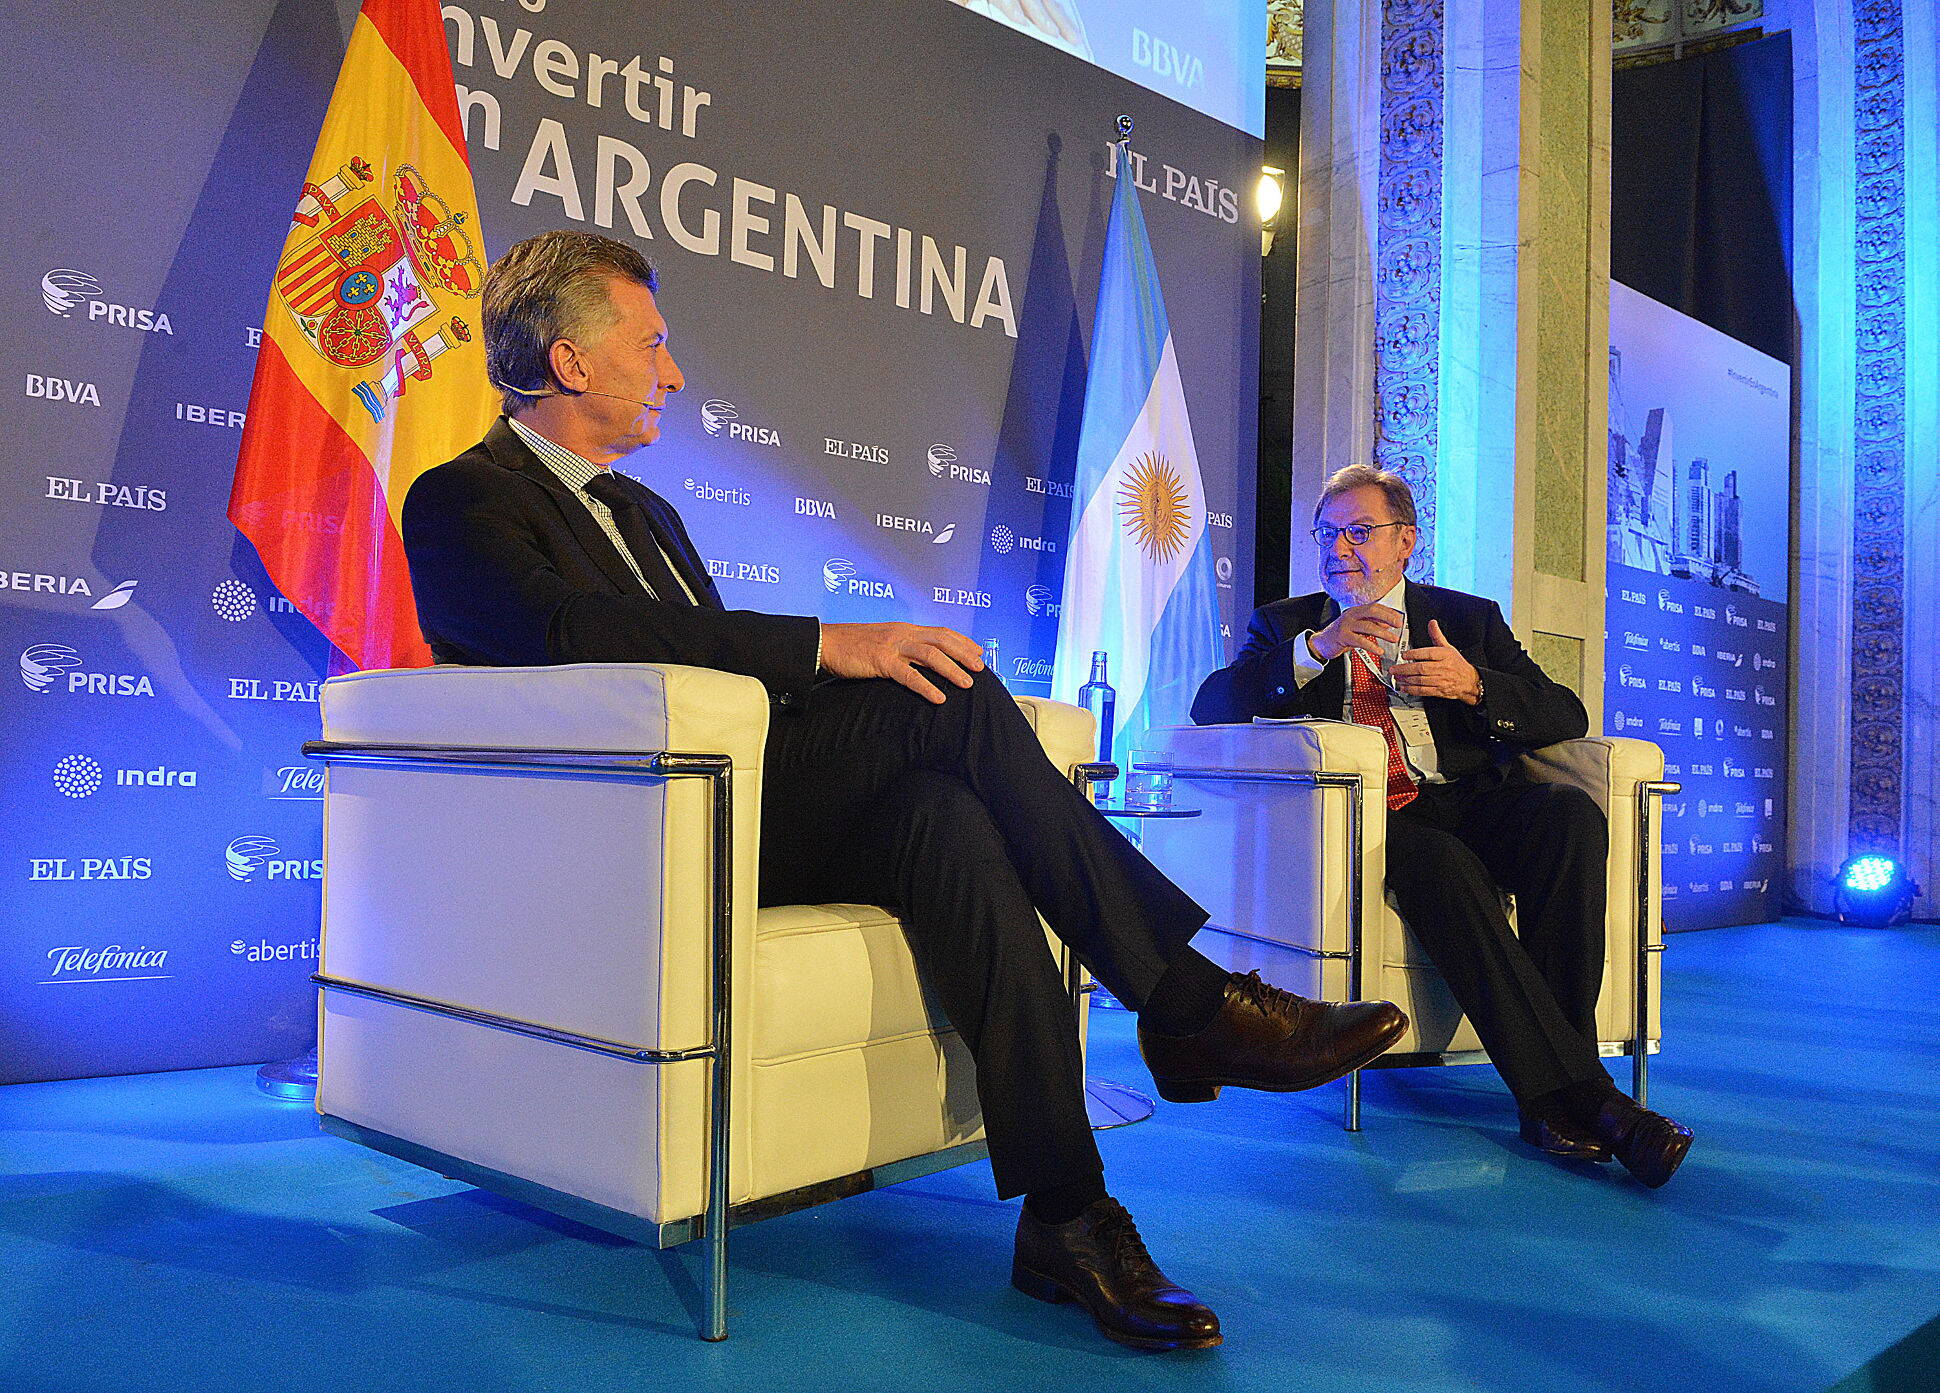 Macri: La Argentina quiere desarrollarse y ser parte del mundo 